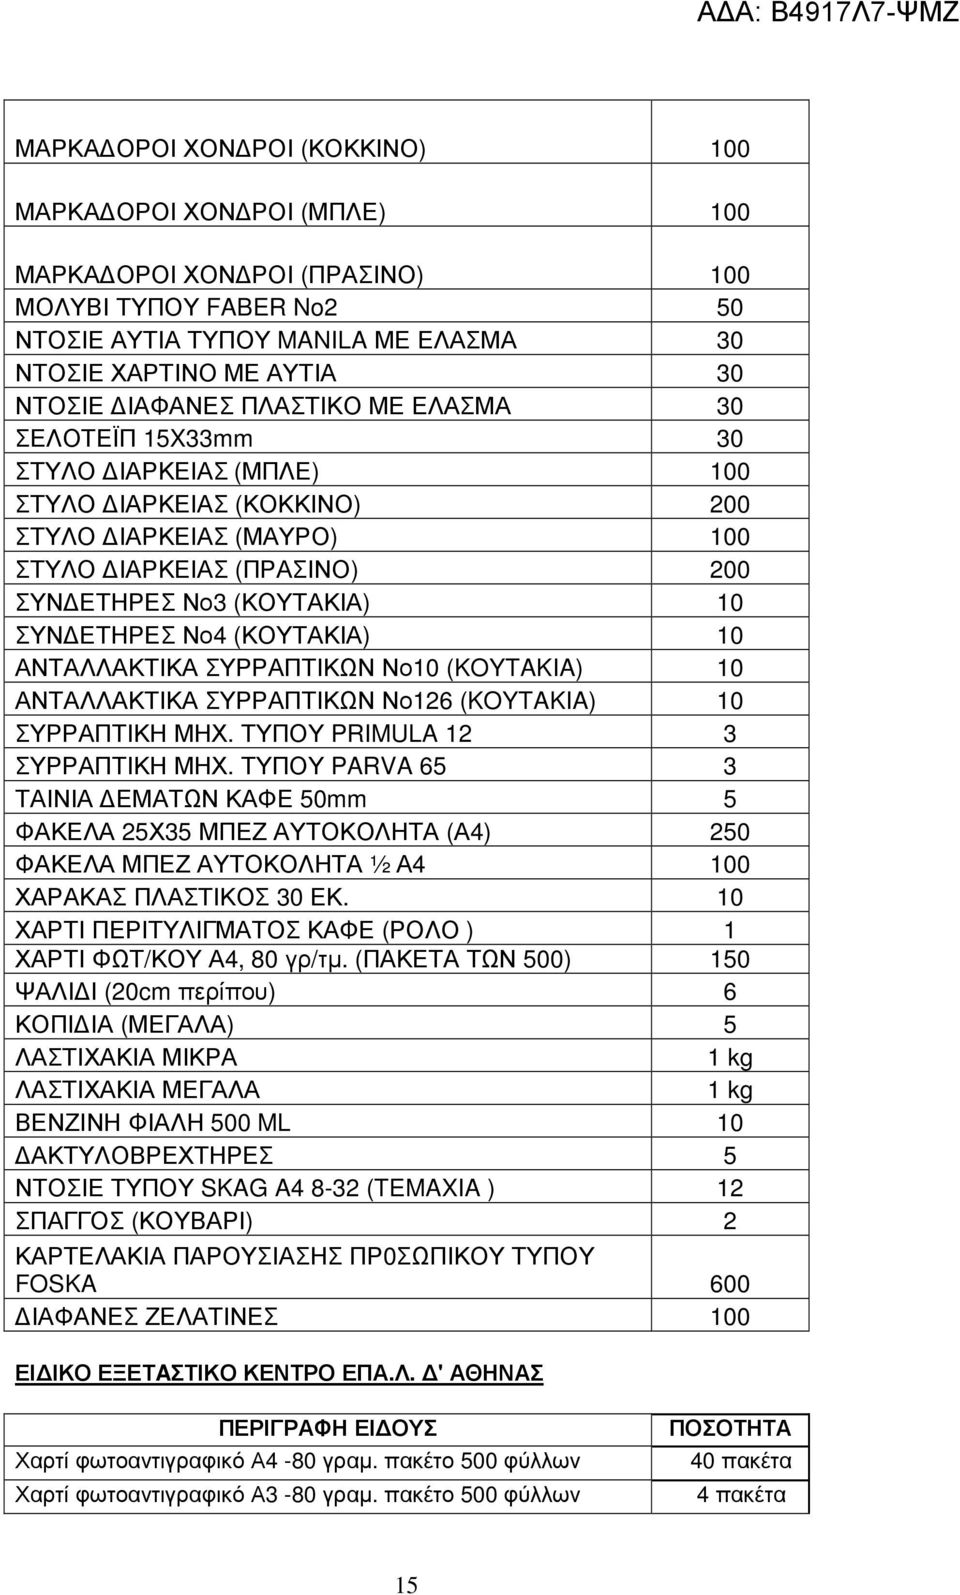 ΕΤΗΡΕΣ Νο4 (ΚΟΥΤΑΚΙΑ) 10 ΑΝΤΑΛΛΑΚΤΙΚΑ ΣΥΡΡΑΠΤΙΚΩΝ Νο10 (KOYTAKIA) 10 ΑΝΤΑΛΛΑΚΤΙΚΑ ΣΥΡΡΑΠΤΙΚΩΝ Νο126 (KOYTAKIA) 10 ΣΥΡΡΑΠΤΙΚΗ ΜΗΧ. ΤΥΠΟΥ PRIMULA 12 3 ΣΥΡΡΑΠΤΙΚΗ ΜΗΧ.